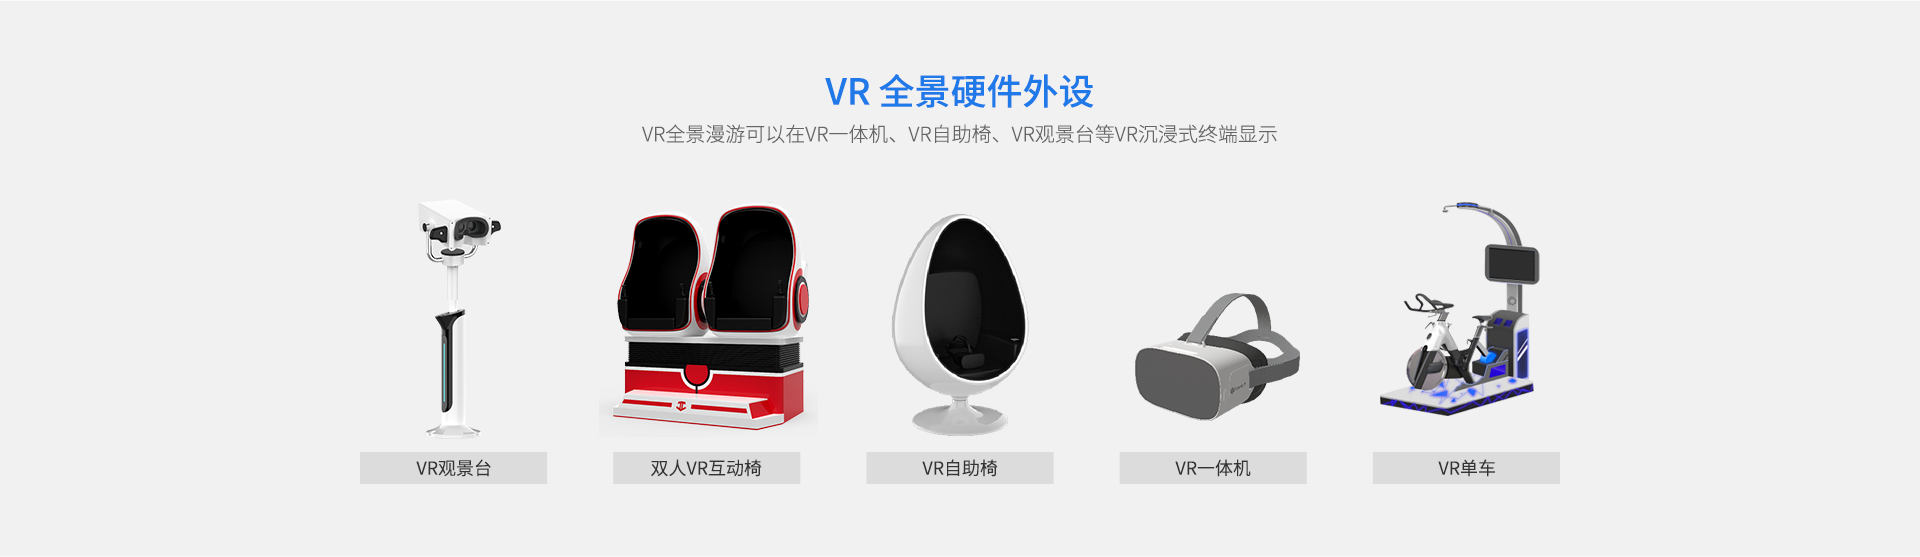 VR全景漫游可以在VR一体机、VR自助椅、VR观景台等VR沉浸式终端显示